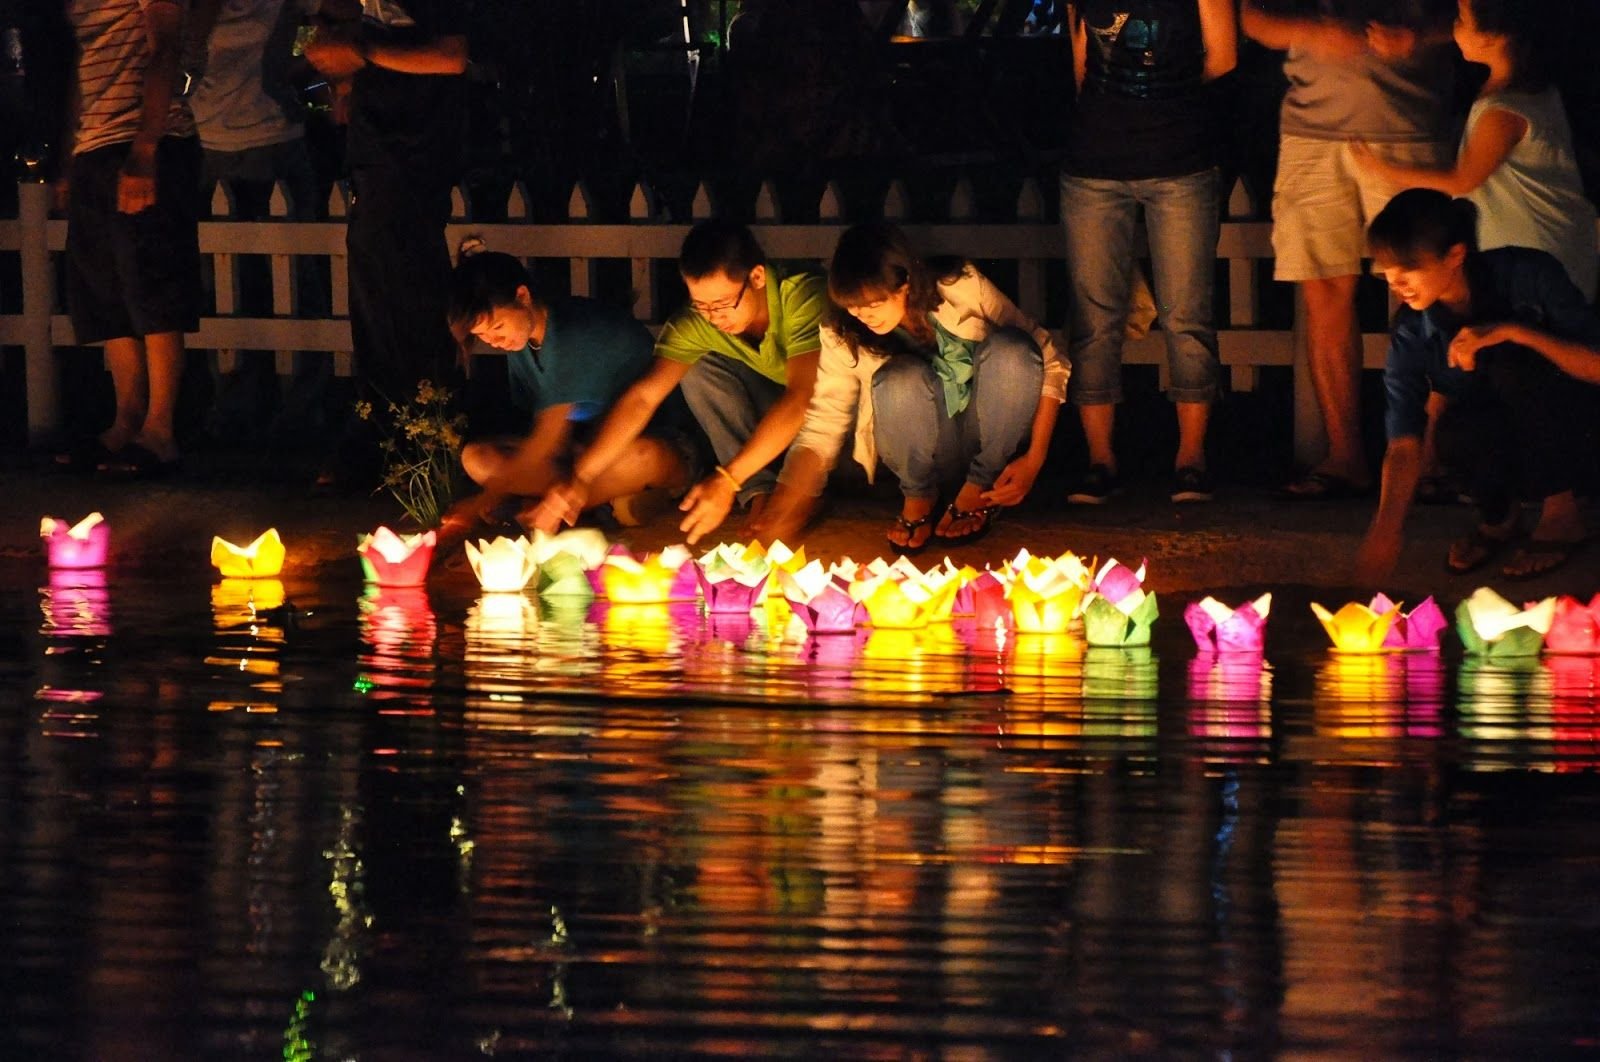 Tận hưởng đêm trăng Tết Trung thu ở Hội An với nhiều hoạt động đậm chất lễ hội truyền thống - Ảnh 2.